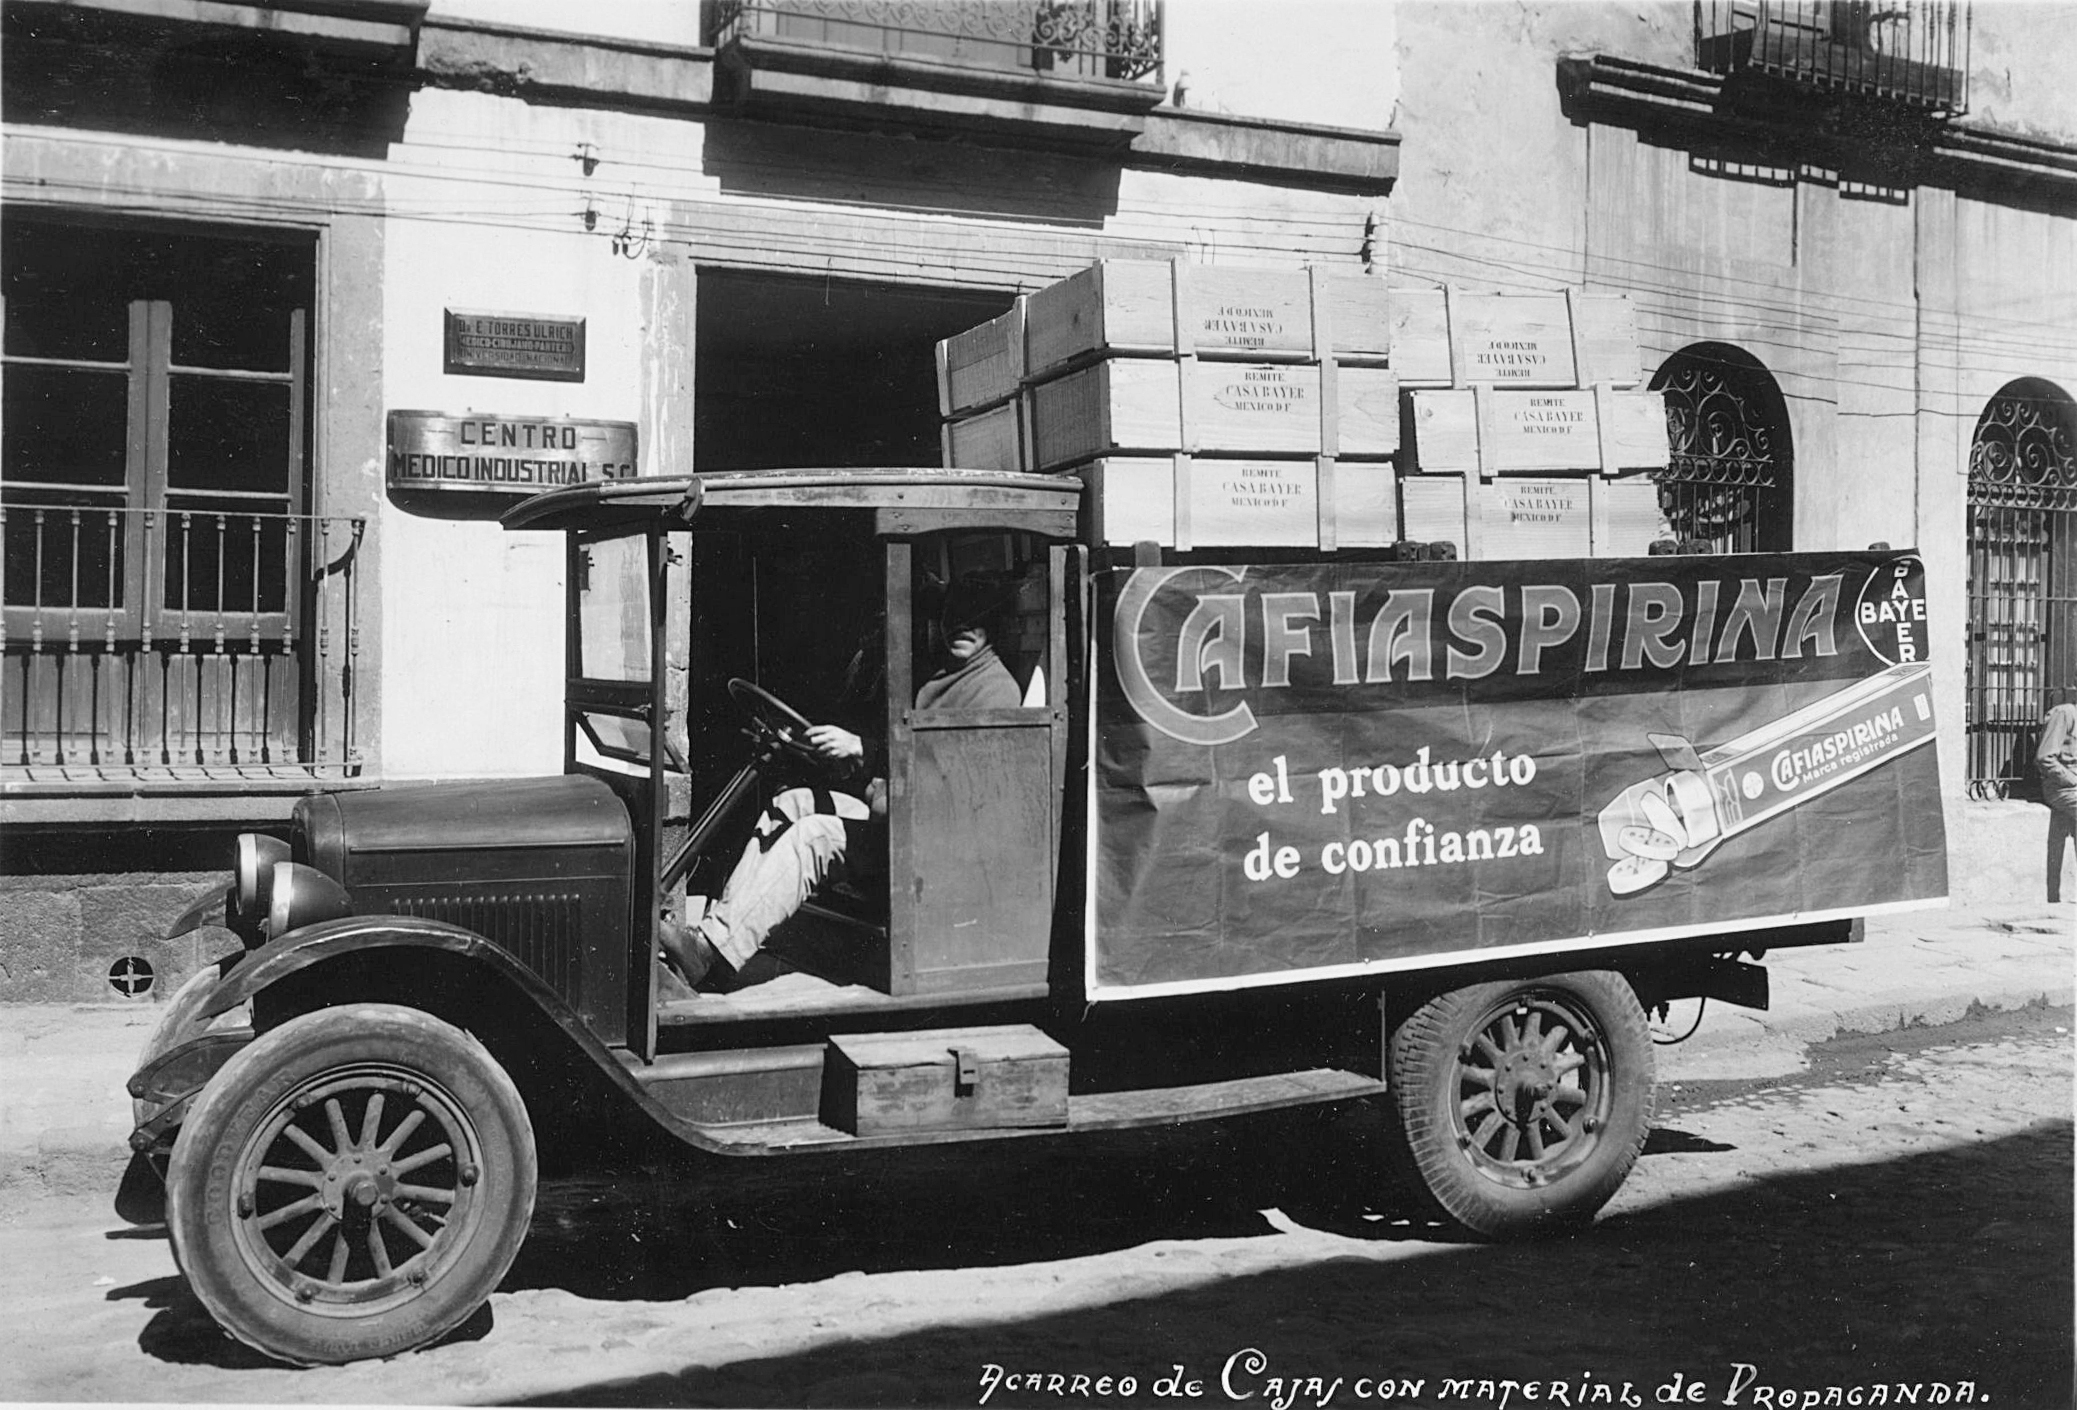 Publicidad Cafiaspirina (1933)